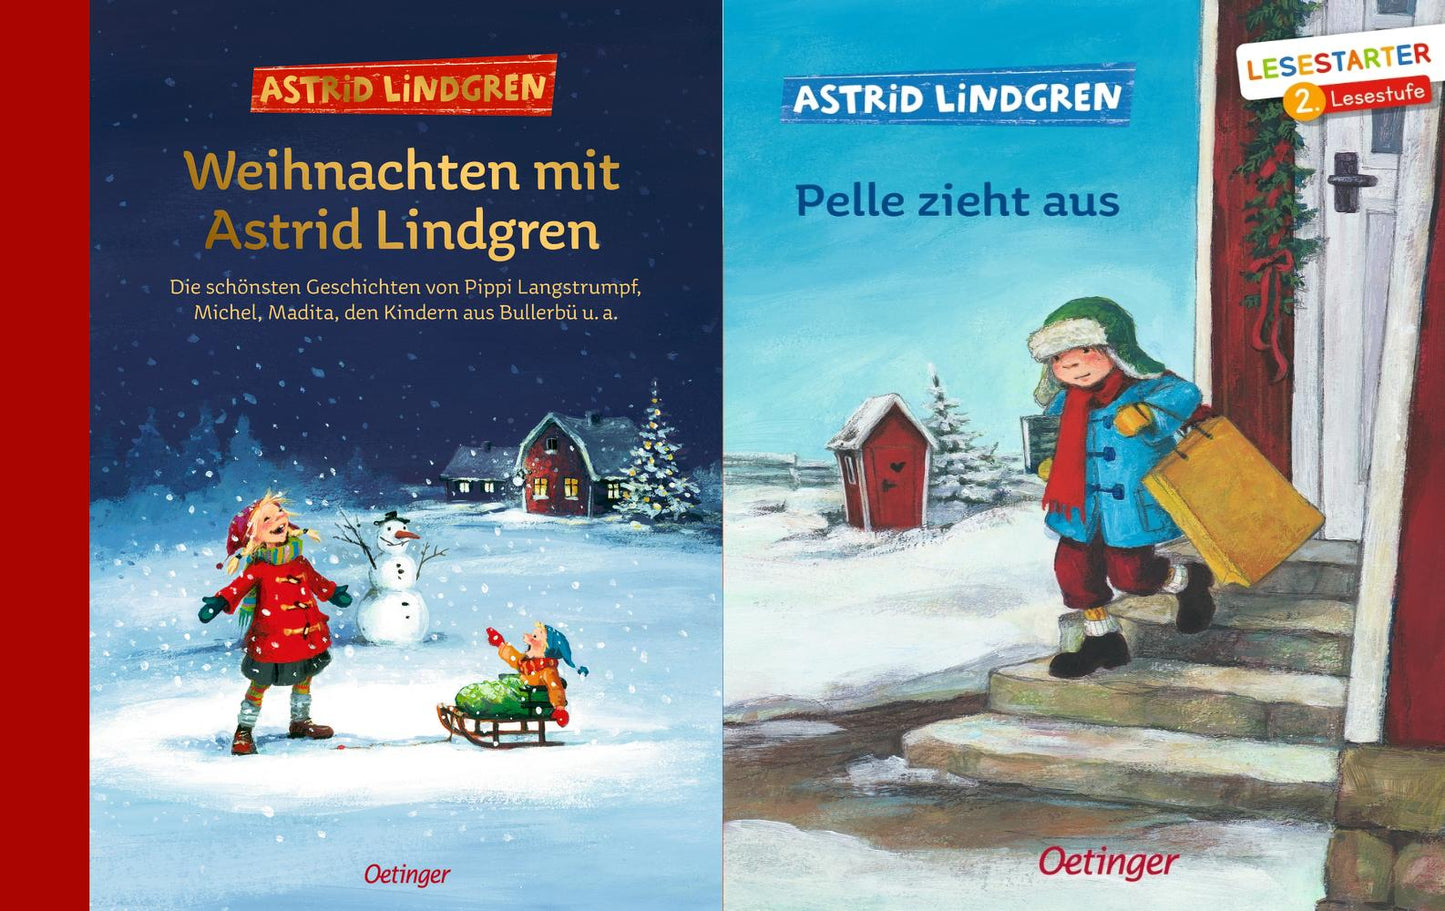 Weihnachten mit Astrid Lindgren + Pelle zieht aus + 1 exklusives Postkartenset